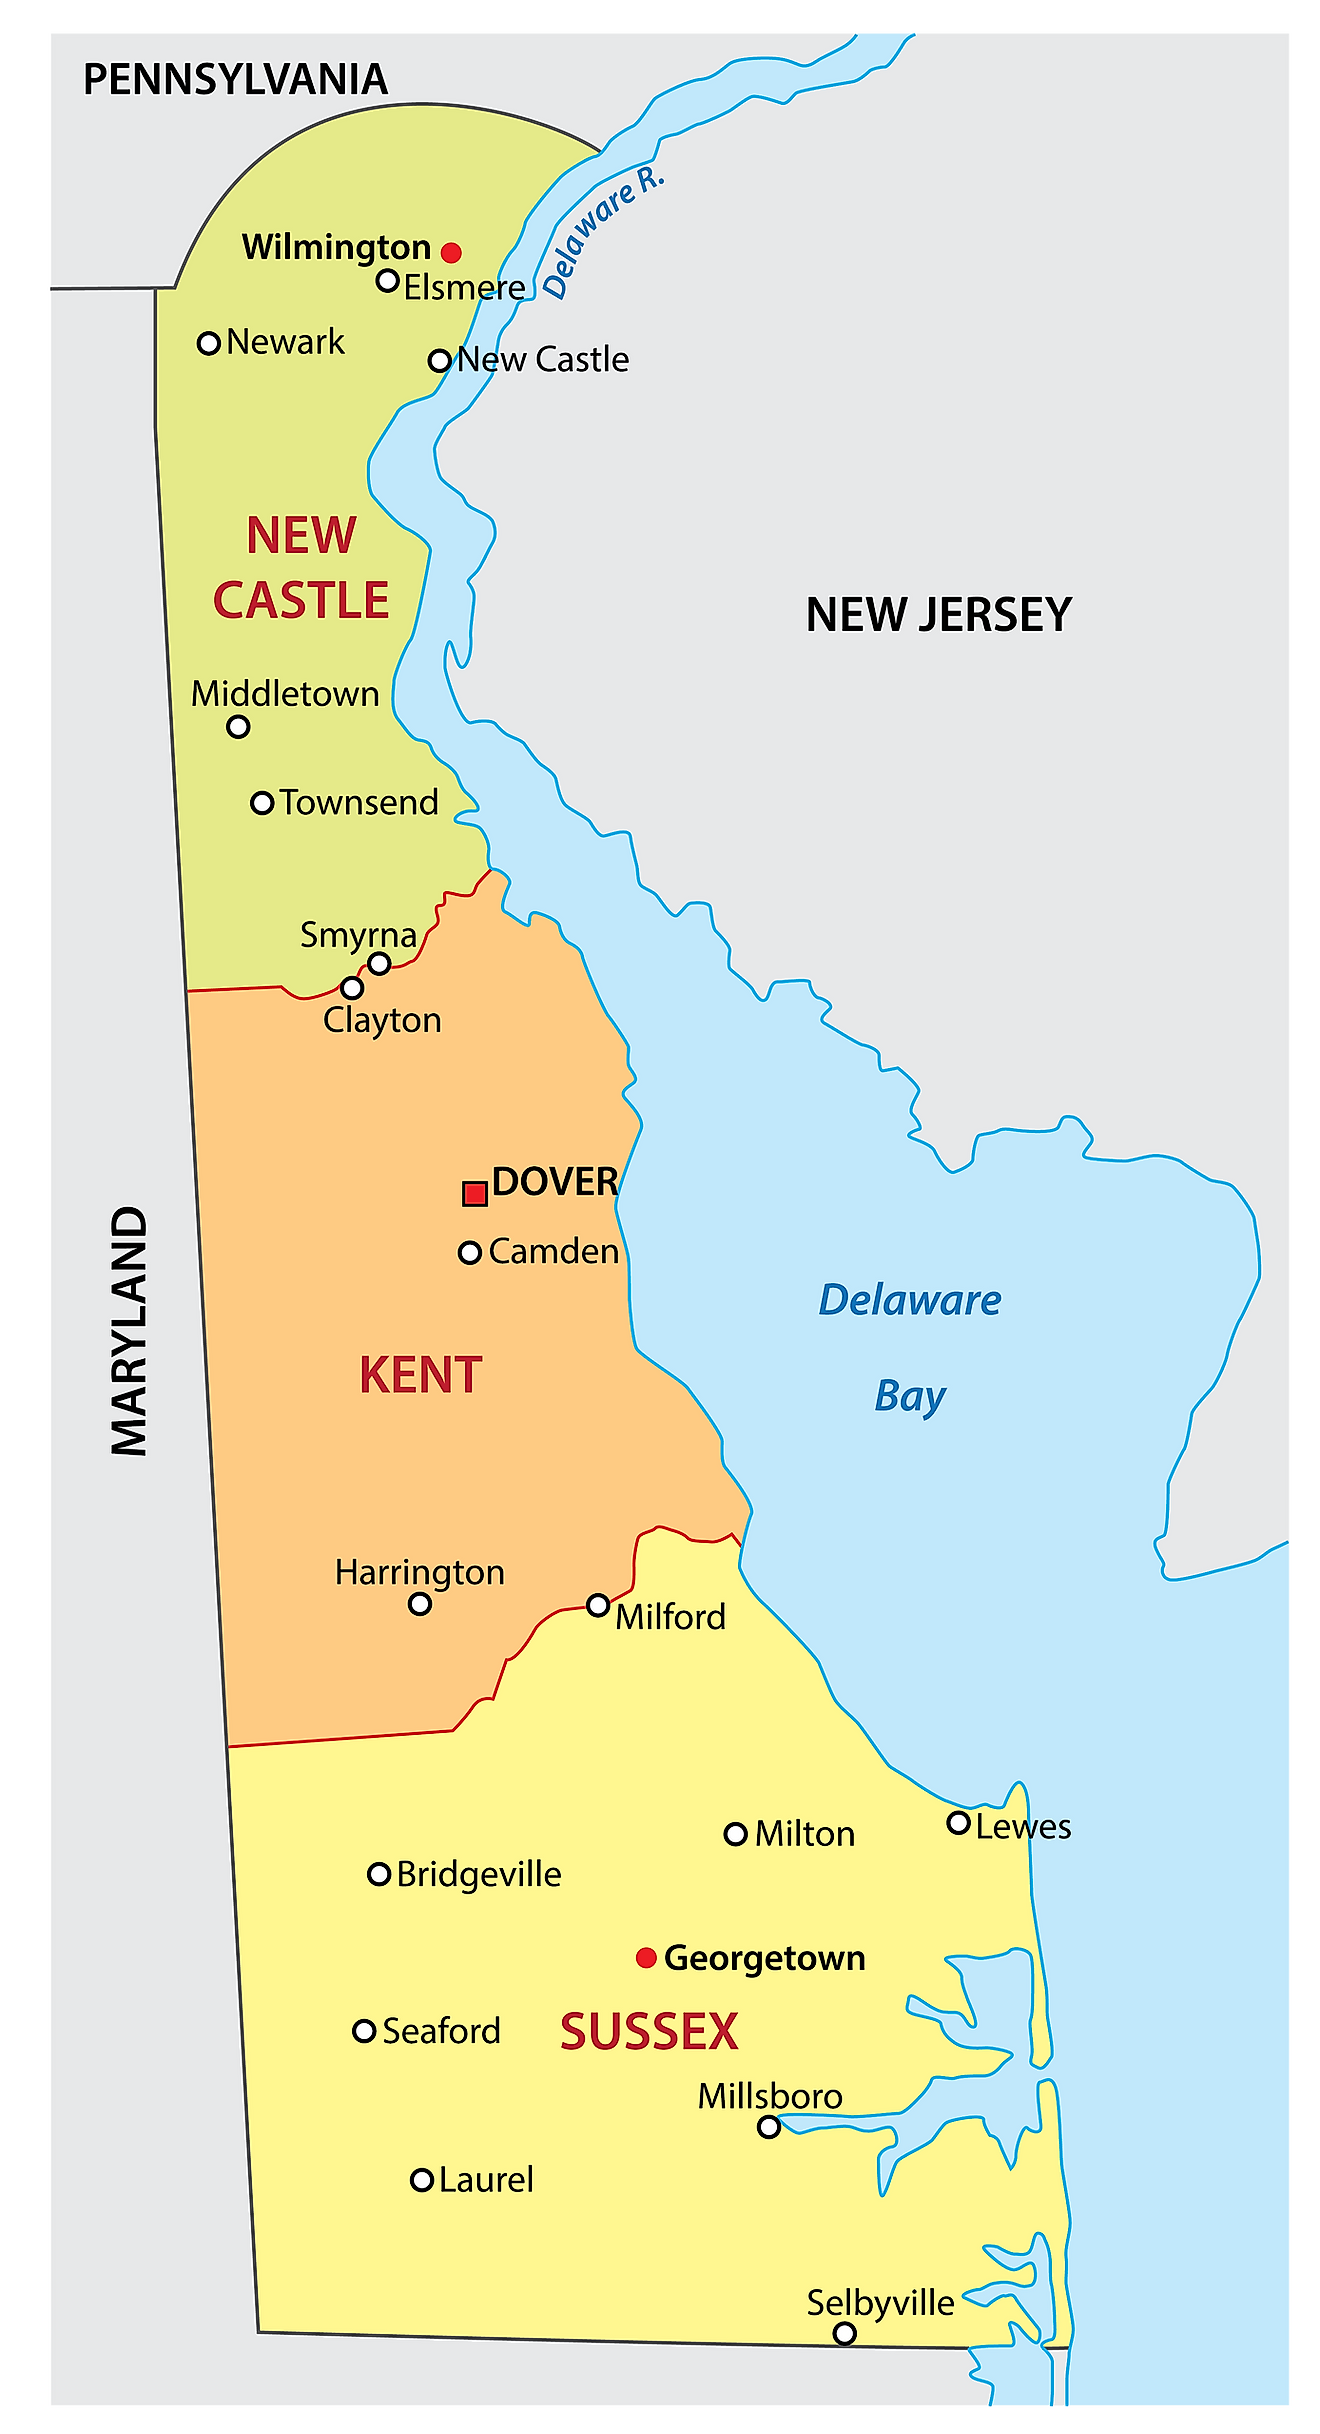 Mapa administrativo de Delaware que muestra sus 3 condados y la ciudad capital - Dover